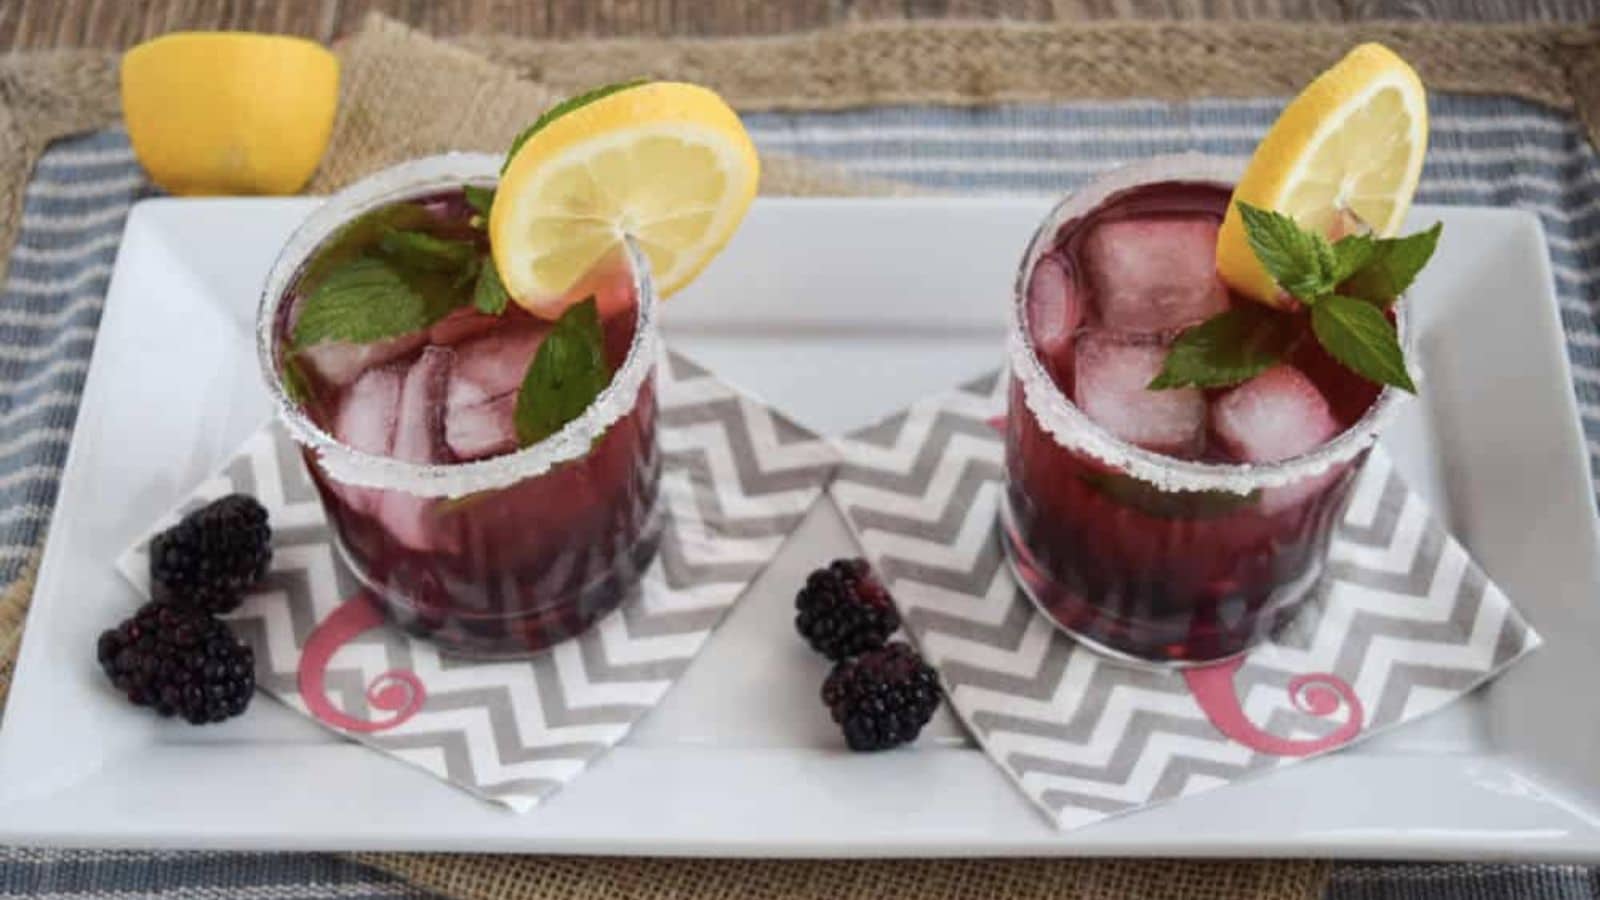 Blackberry vodka cocktails on a serving platter.